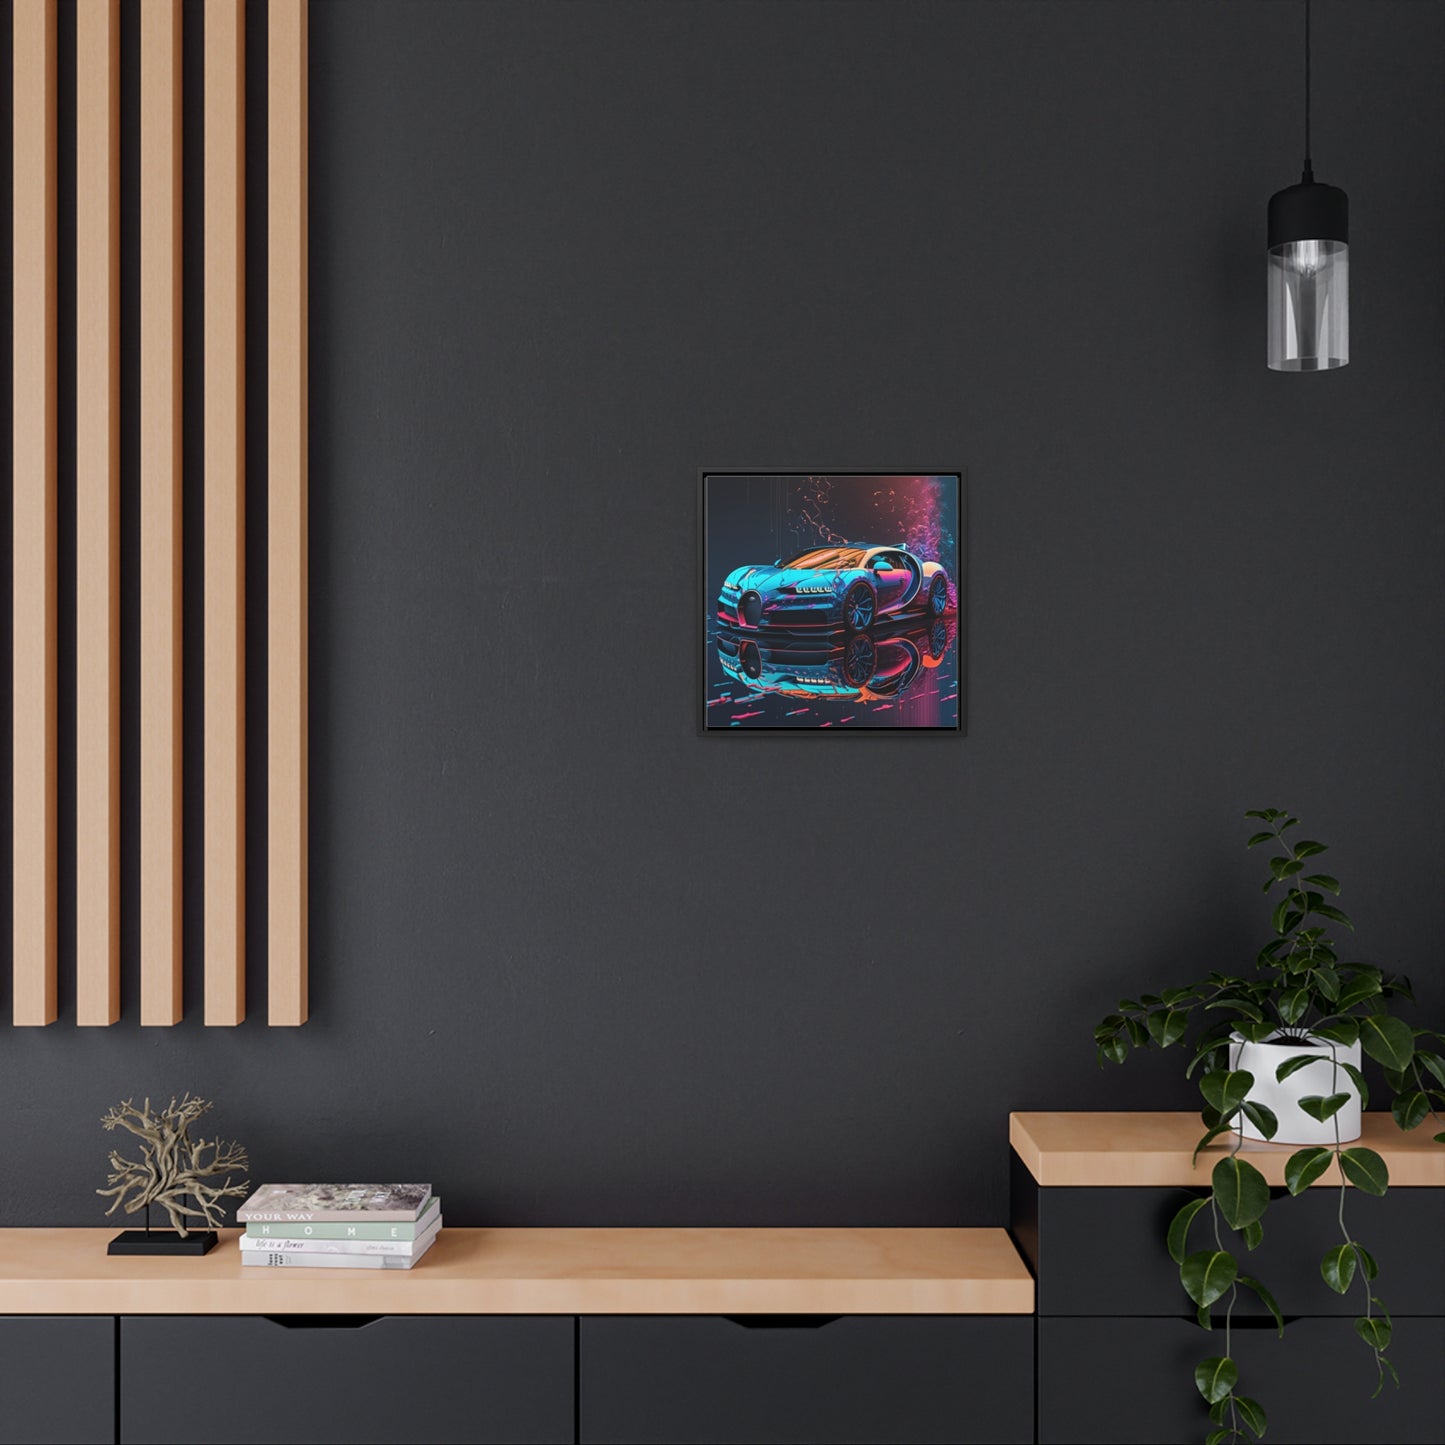 Gallery Canvas Wraps, Square Frame Bugatti Neon Chiron 4